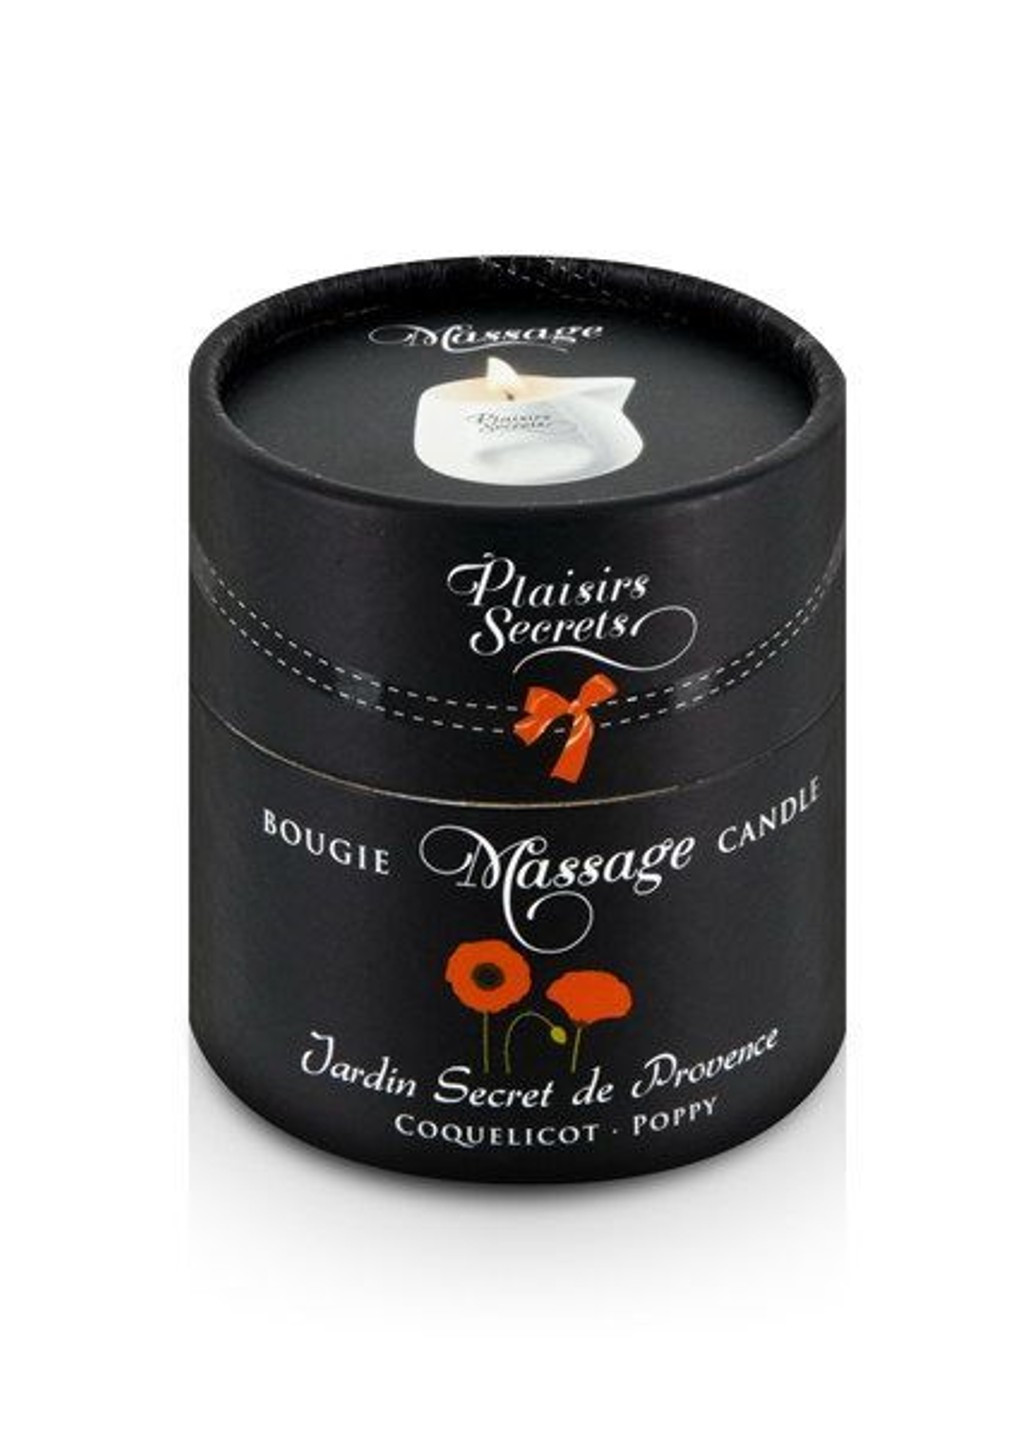 Массажная свеча Poppy (80 мл) подарочная упаковка, керамический сосуд Plaisirs Secrets (255169371)